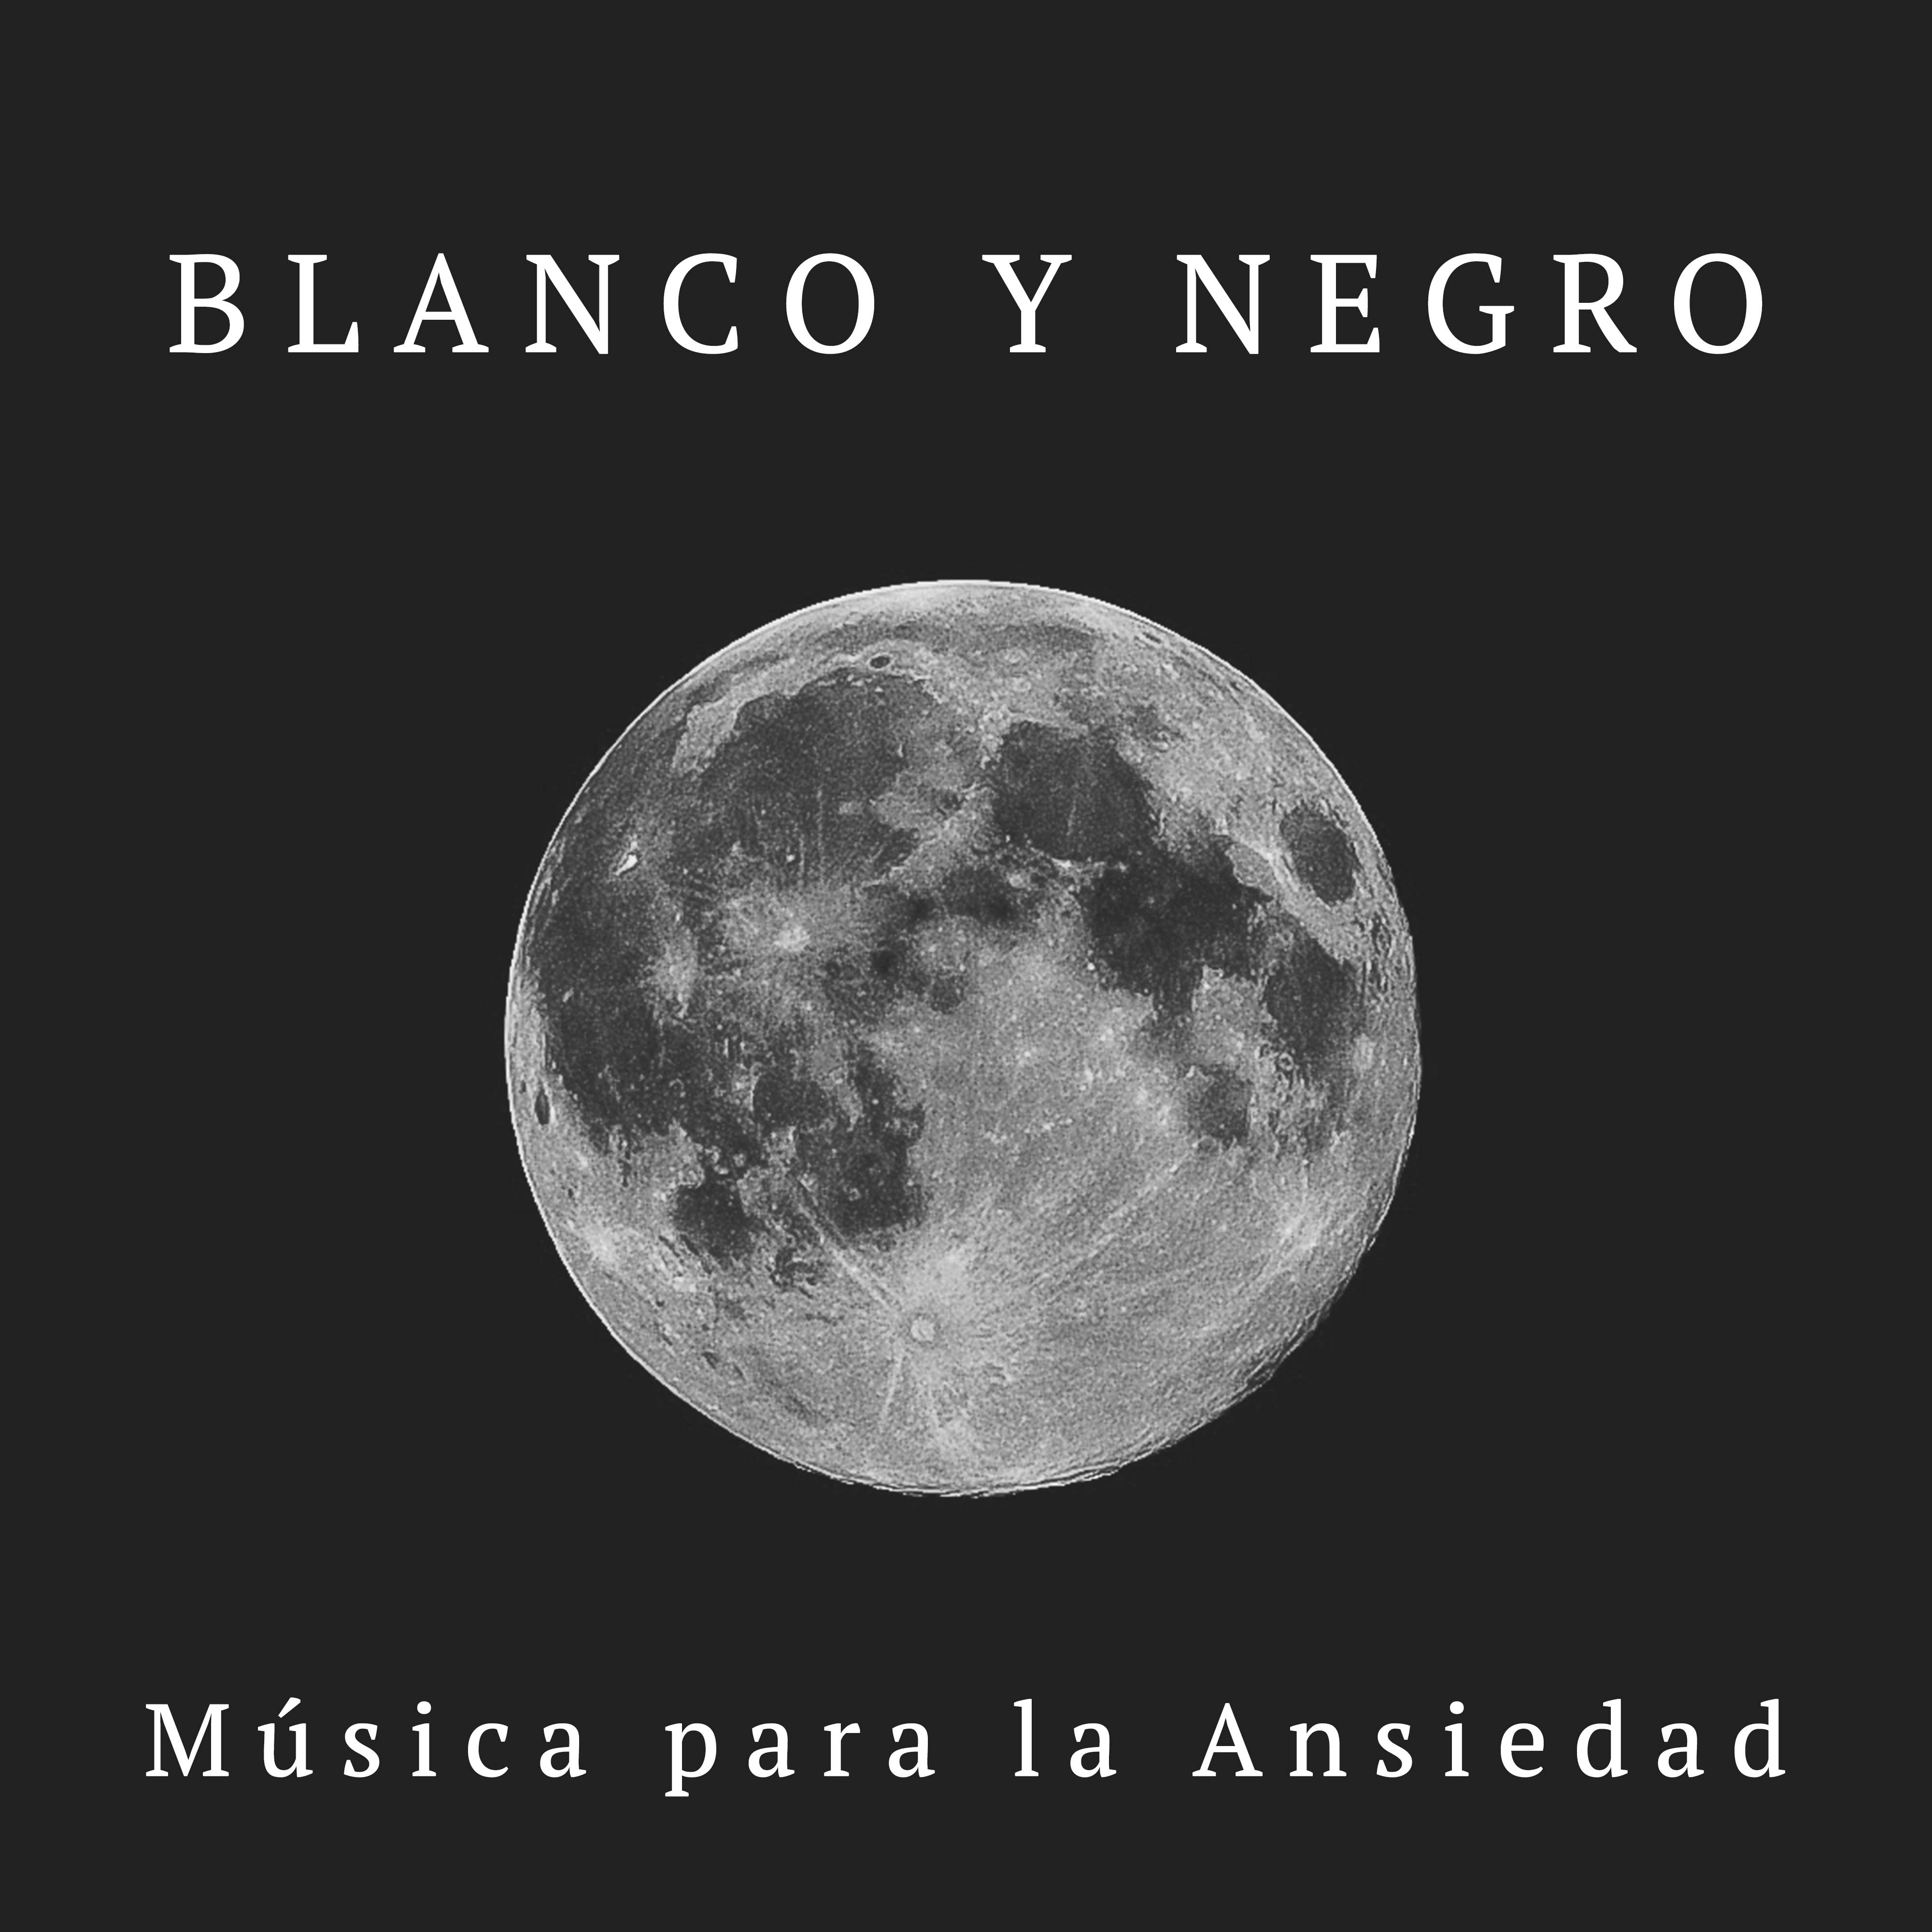 Blanco y Negro: Musica para la Ansiedad